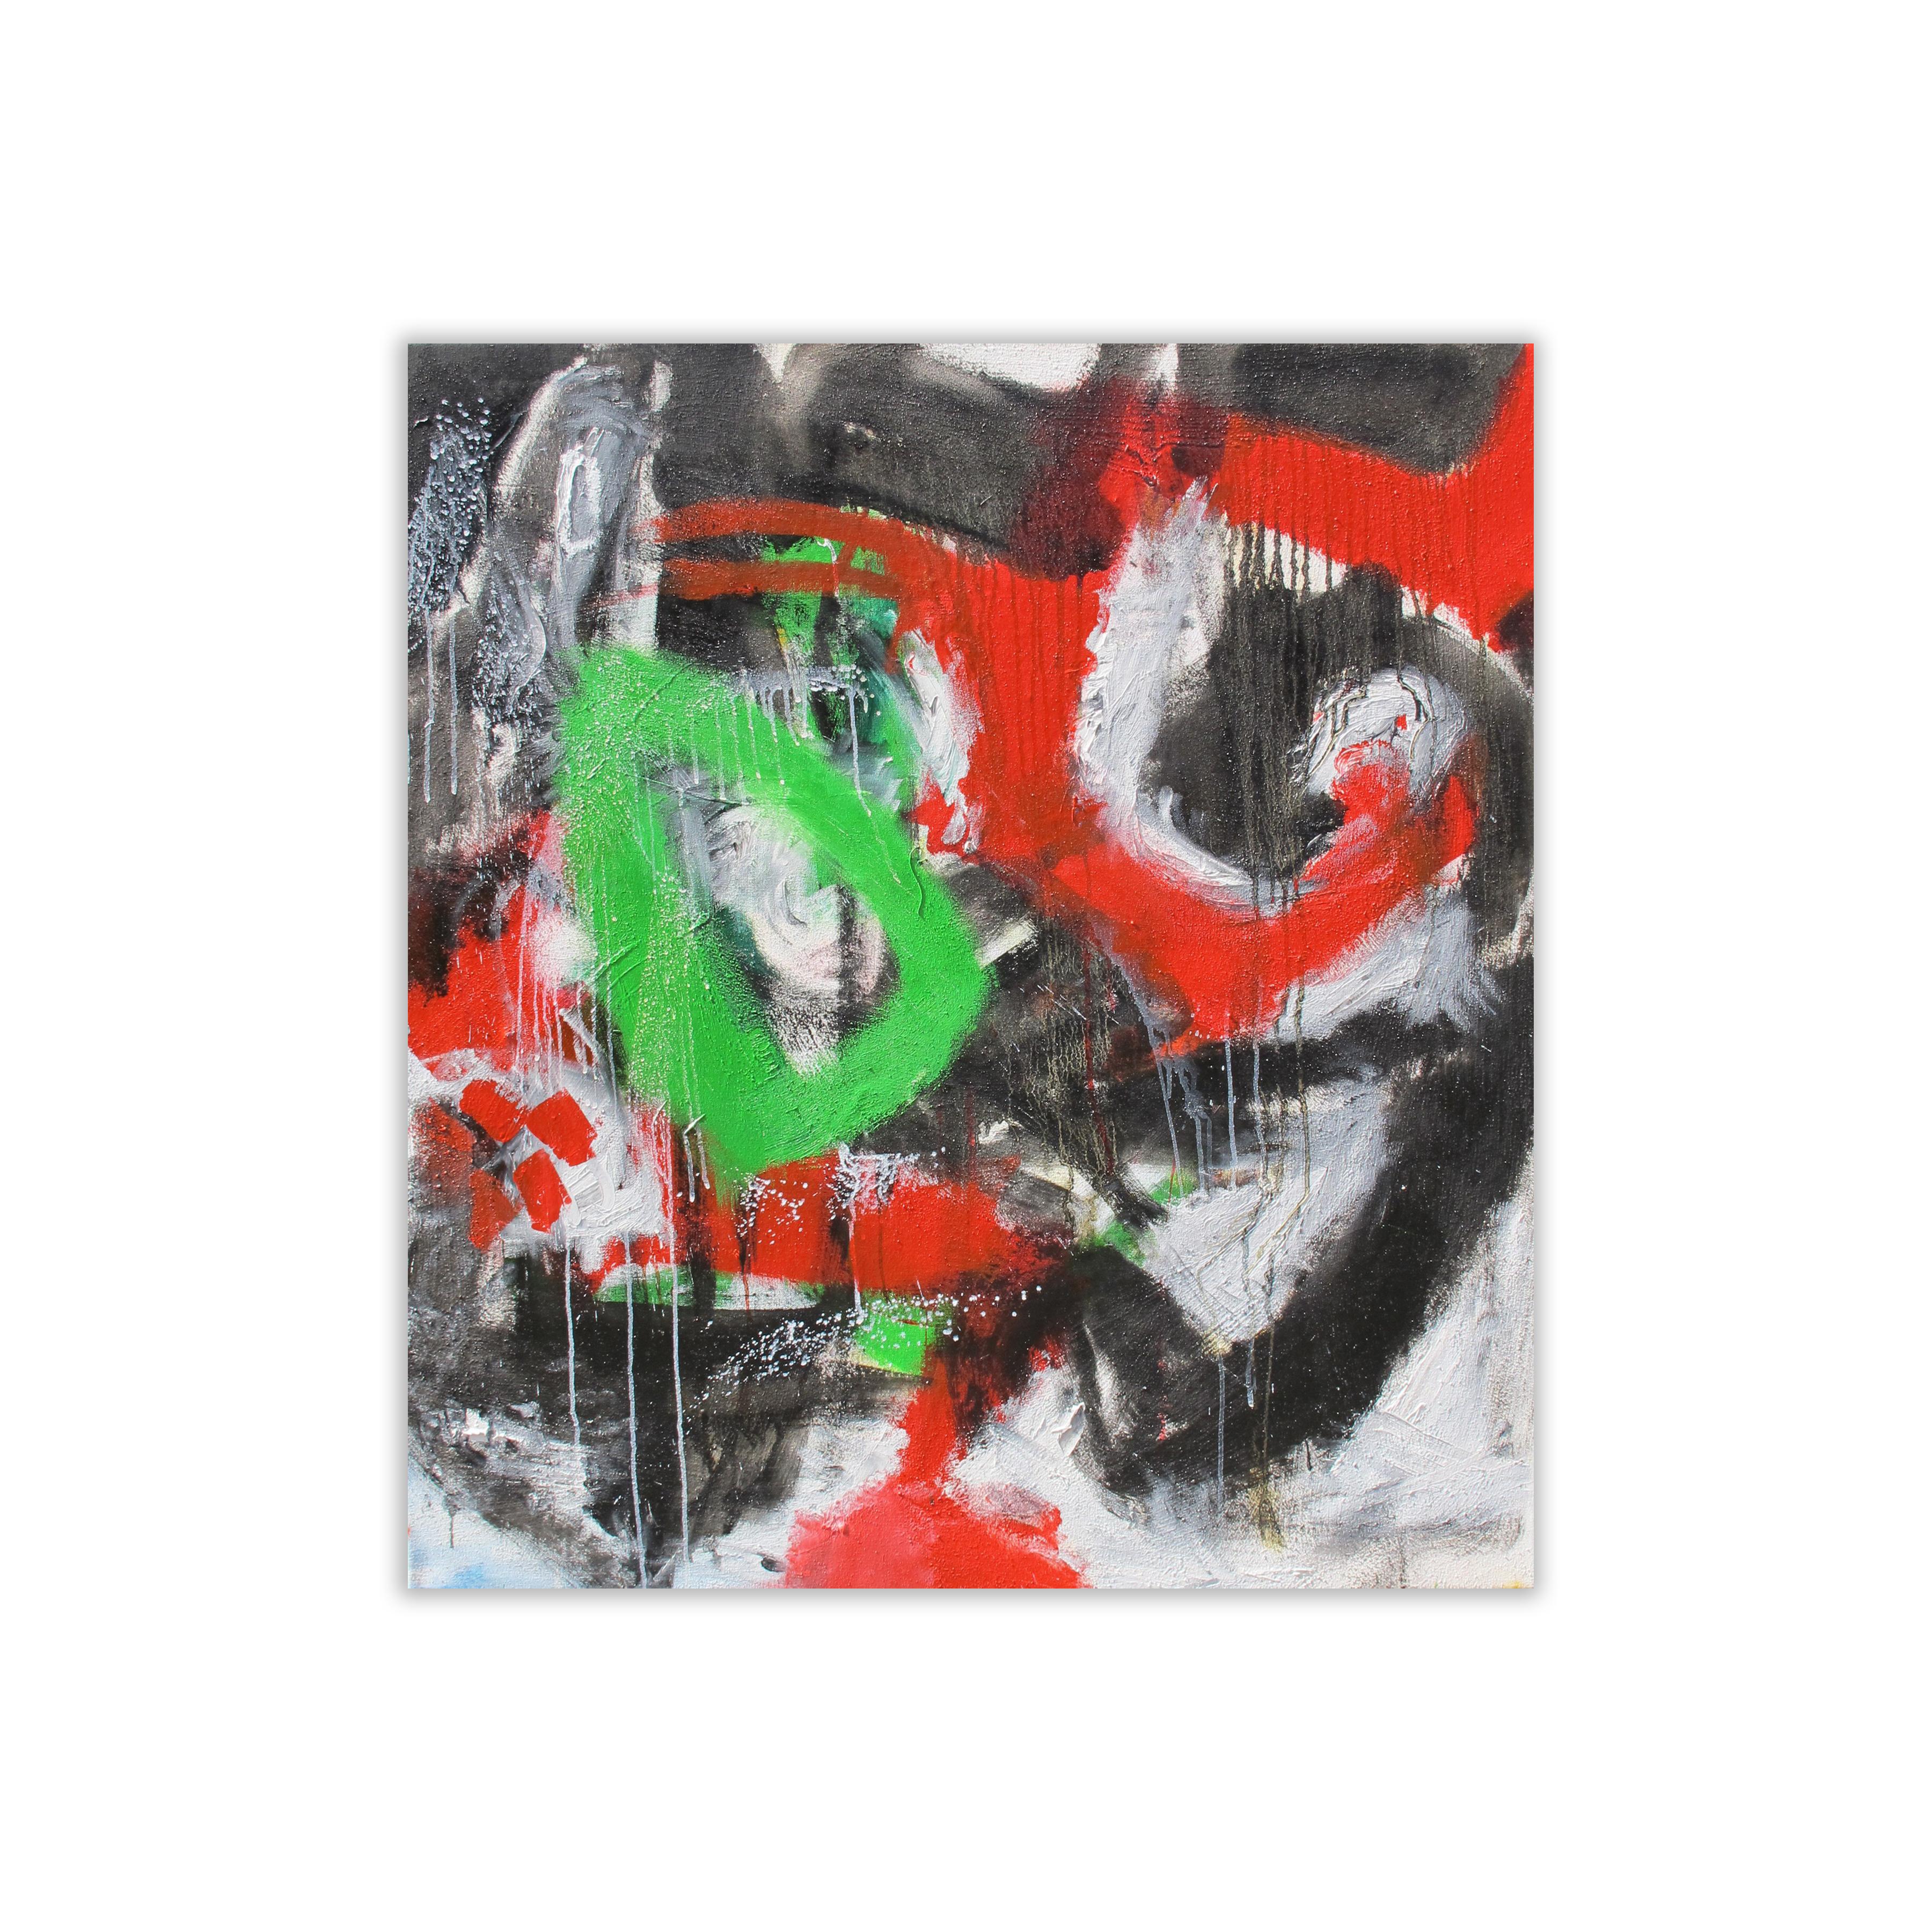 Henrik Sandner Abstract Painting - Beth El #6. by Henrik Sander, Represented by Tuleste Factory